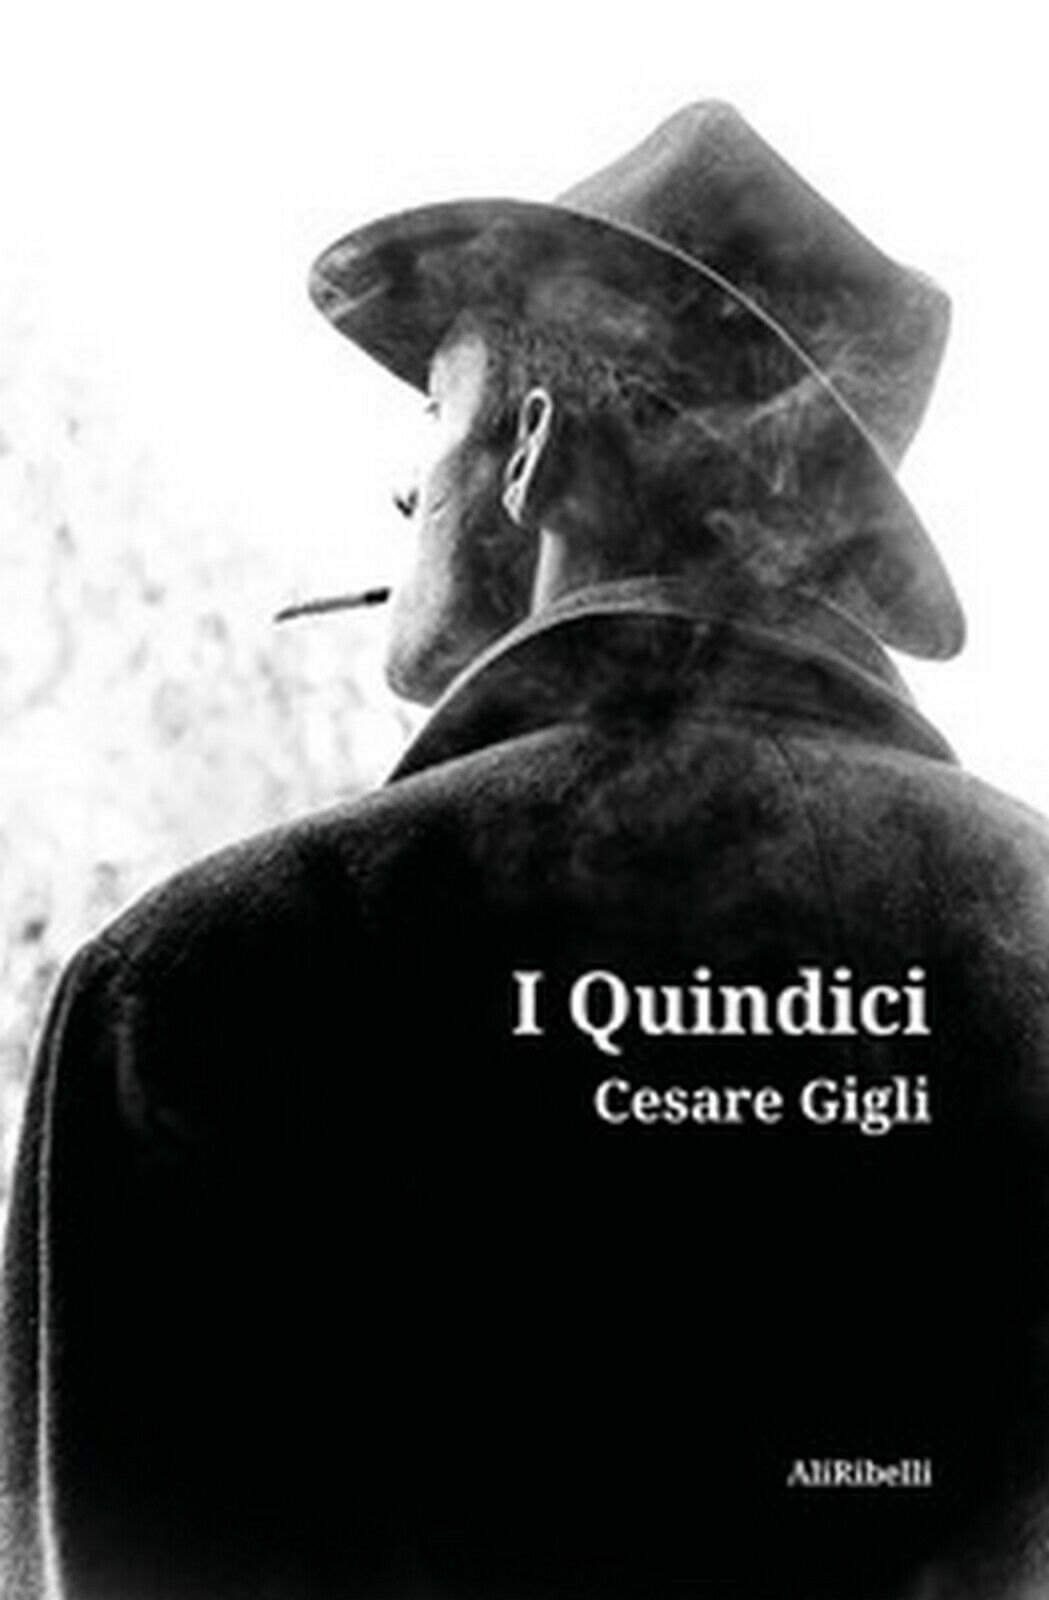 I Quindici  di Cesare Gigli,  2020,  Ali Ribelli Edizioni